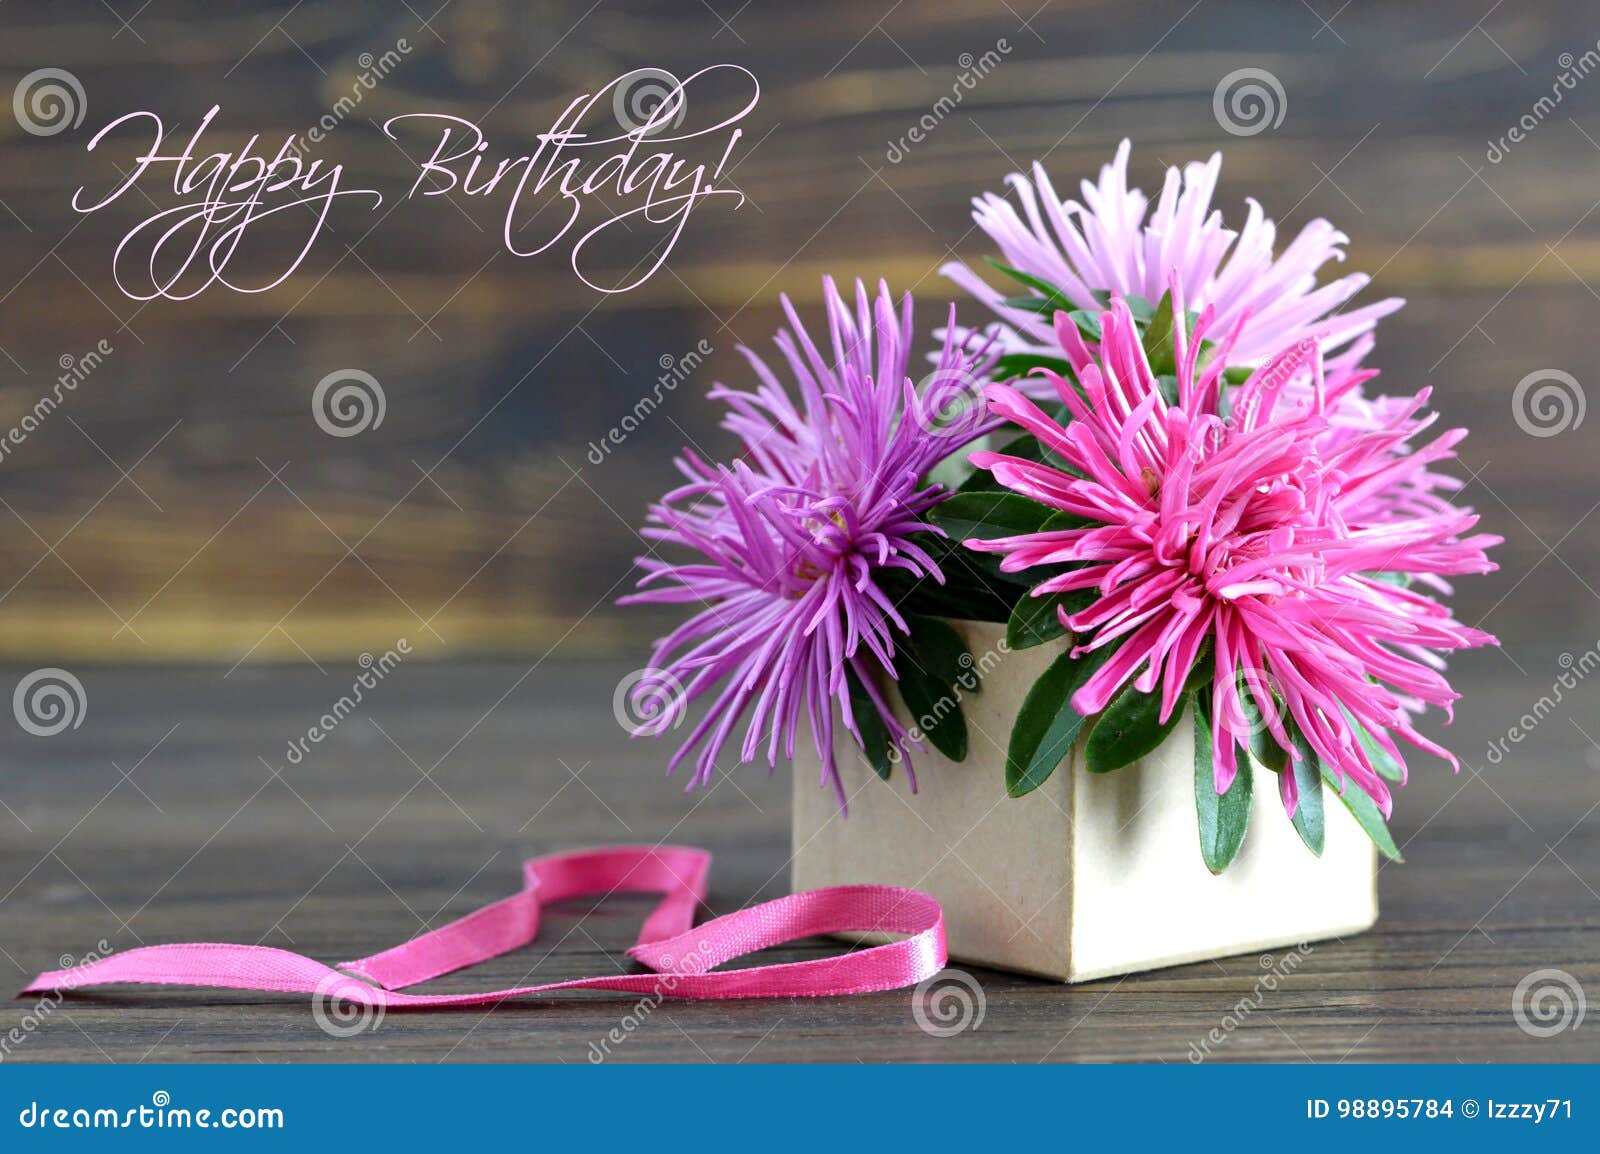 567 Carte De Joyeux Anniversaire Avec Des Fleurs Photos Libres De Droits Et Gratuites De Dreamstime